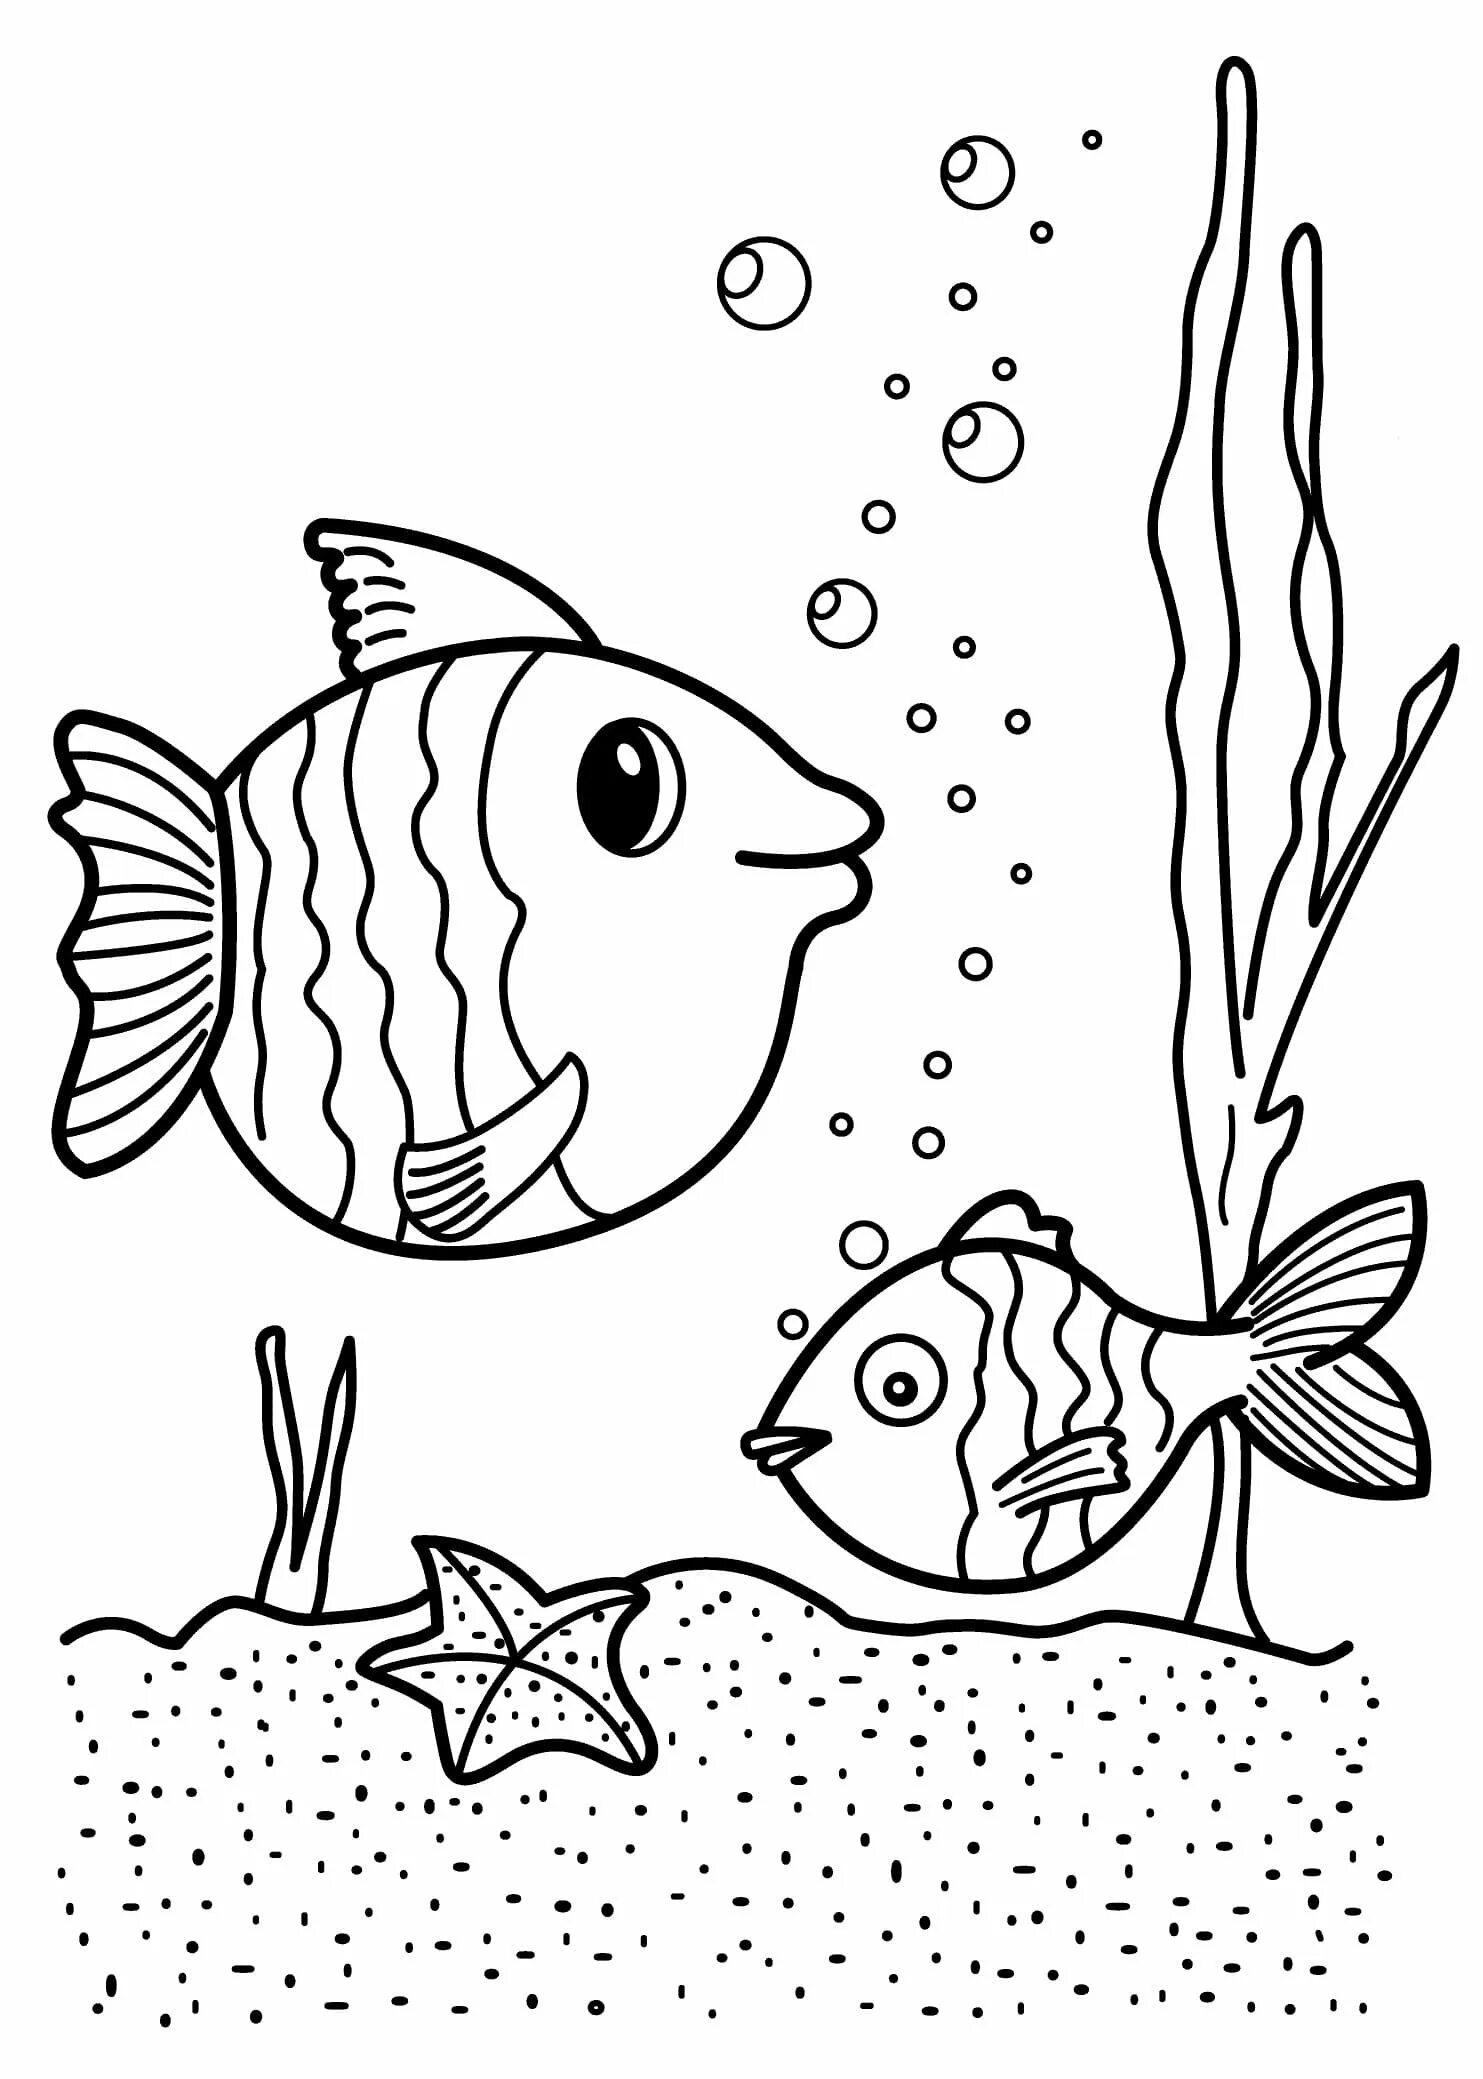 Раскраска рыбы для детей 6 лет. Раскраска рыбка. Рыбка раскраска для детей. Рыба раскраска для детей. Рыбка для раскрашивания для детей.